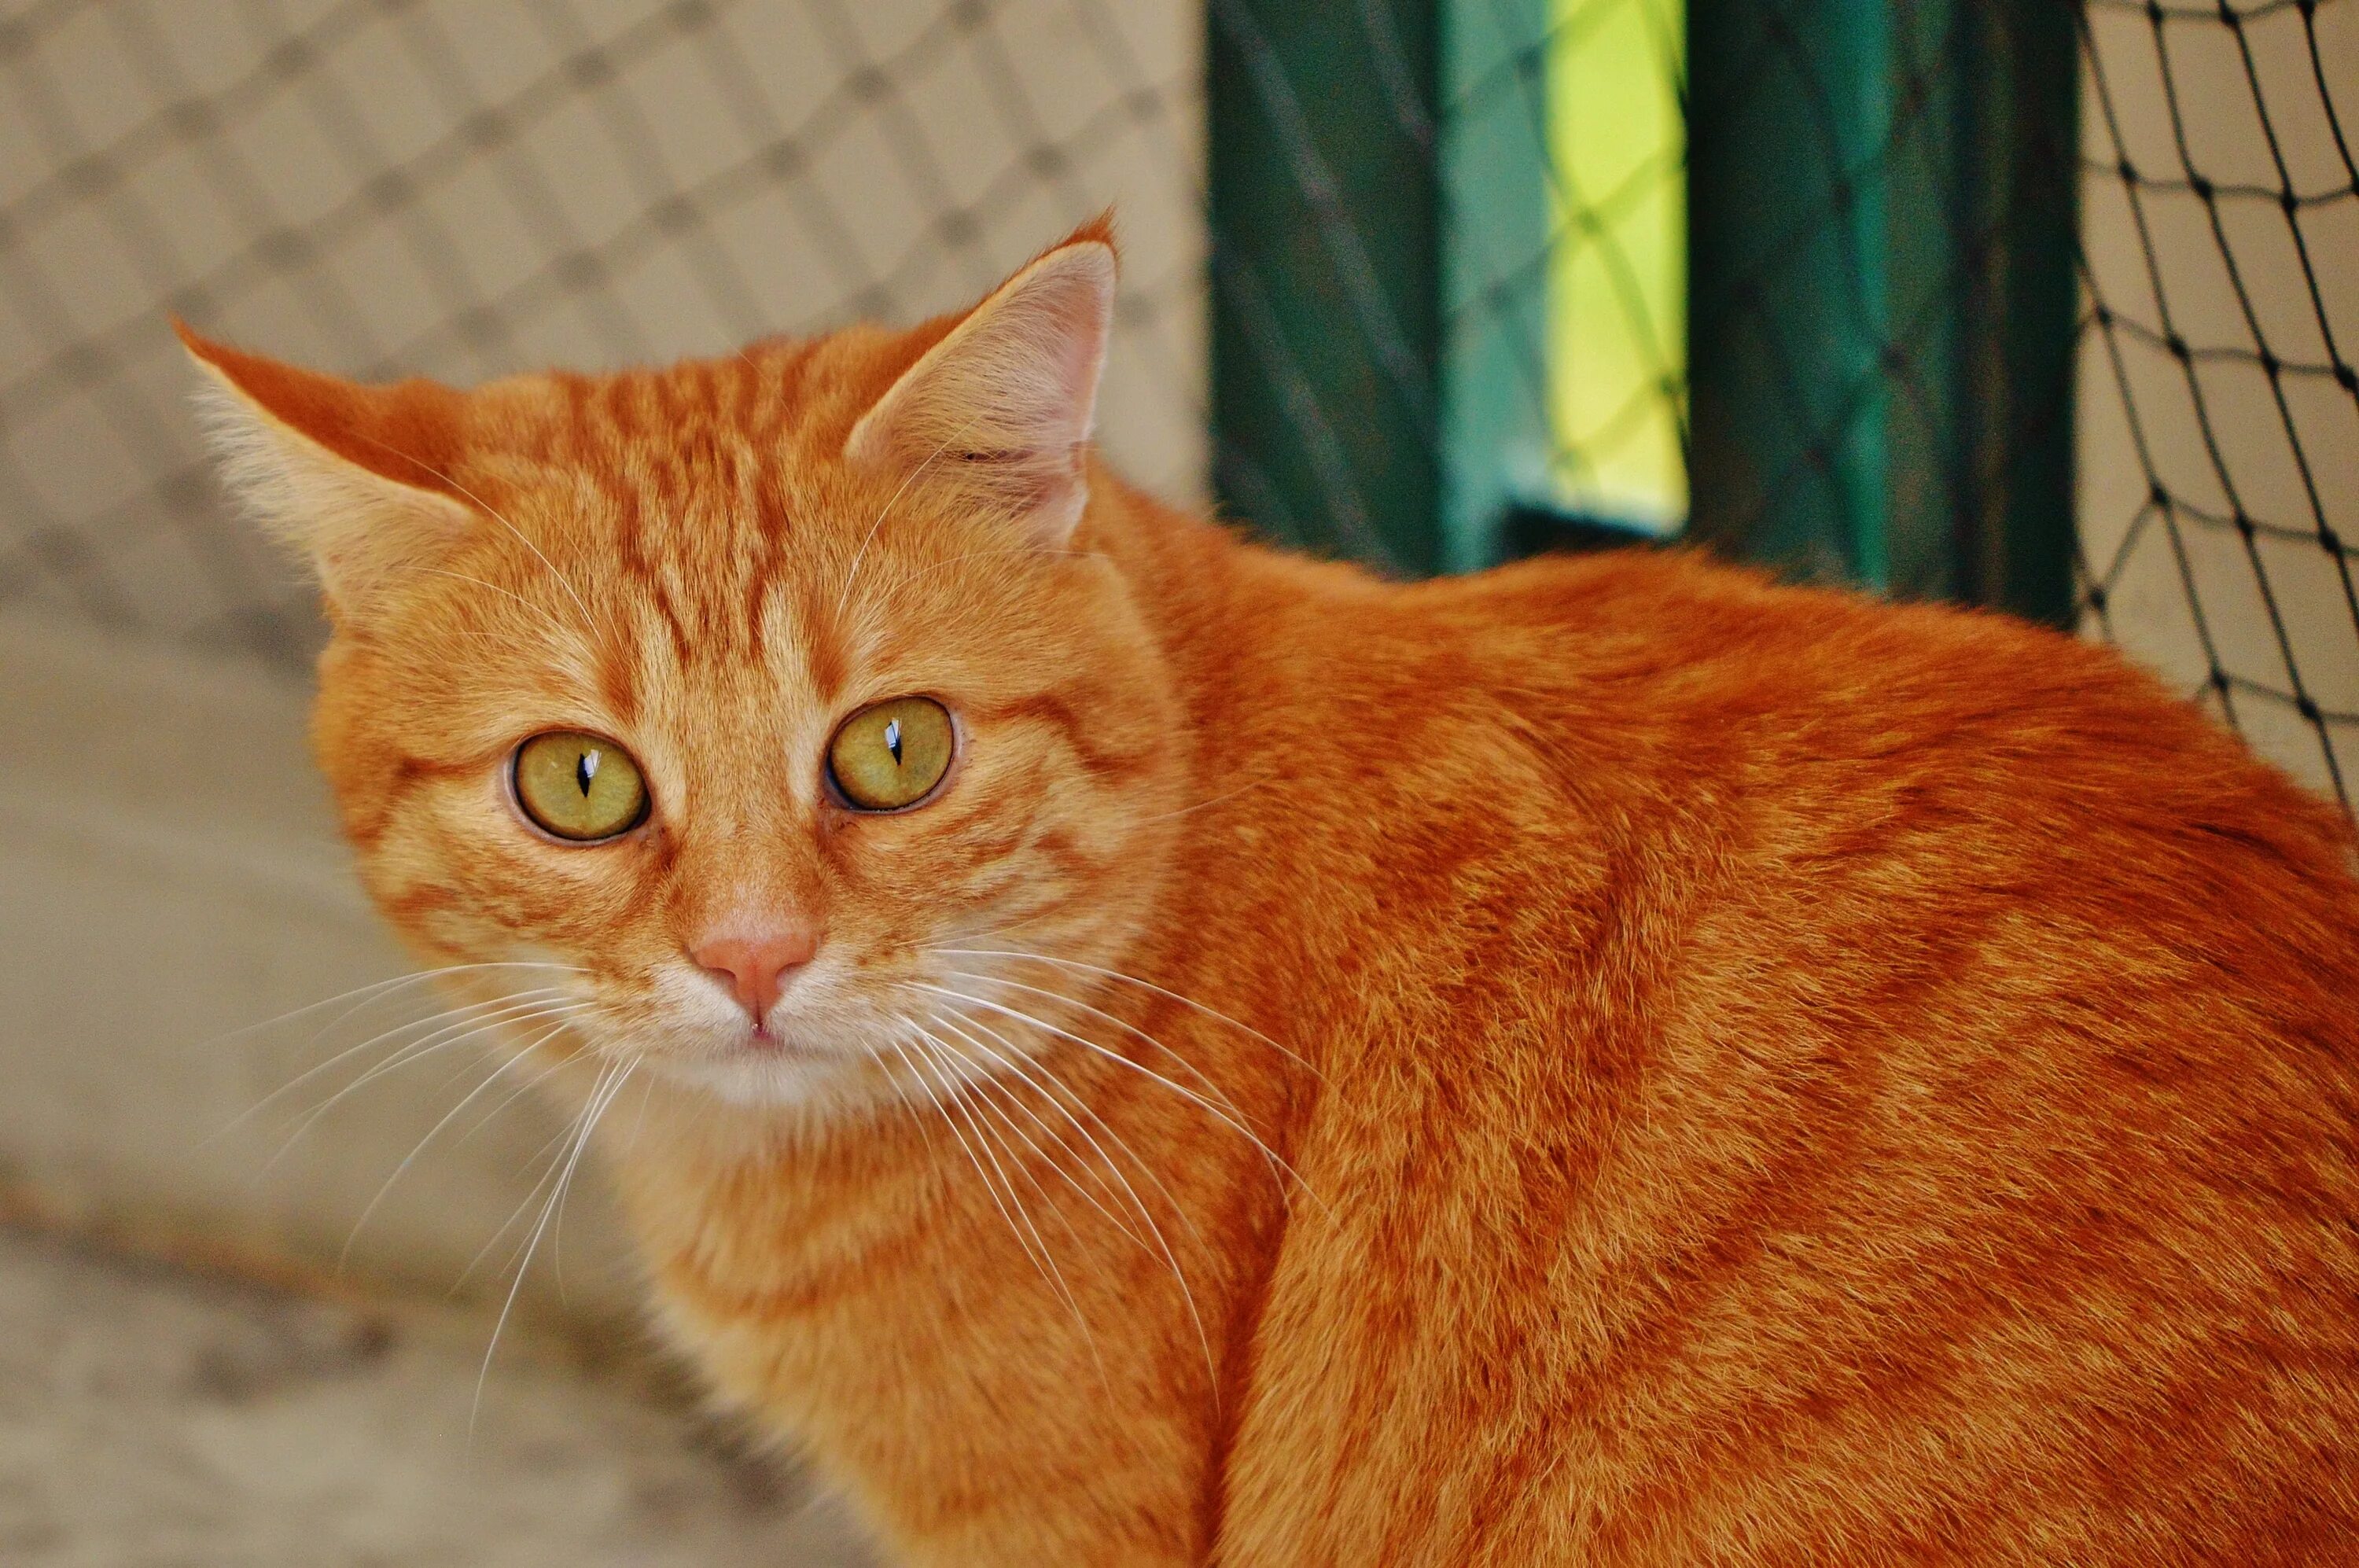 Покажи red cat. Европейская короткошерстная кошка рыжая. Аравийский МАУ рыжий. Европейская короткошерстная табби рыжий. Сибирский гладкошерстный рыжий кот.